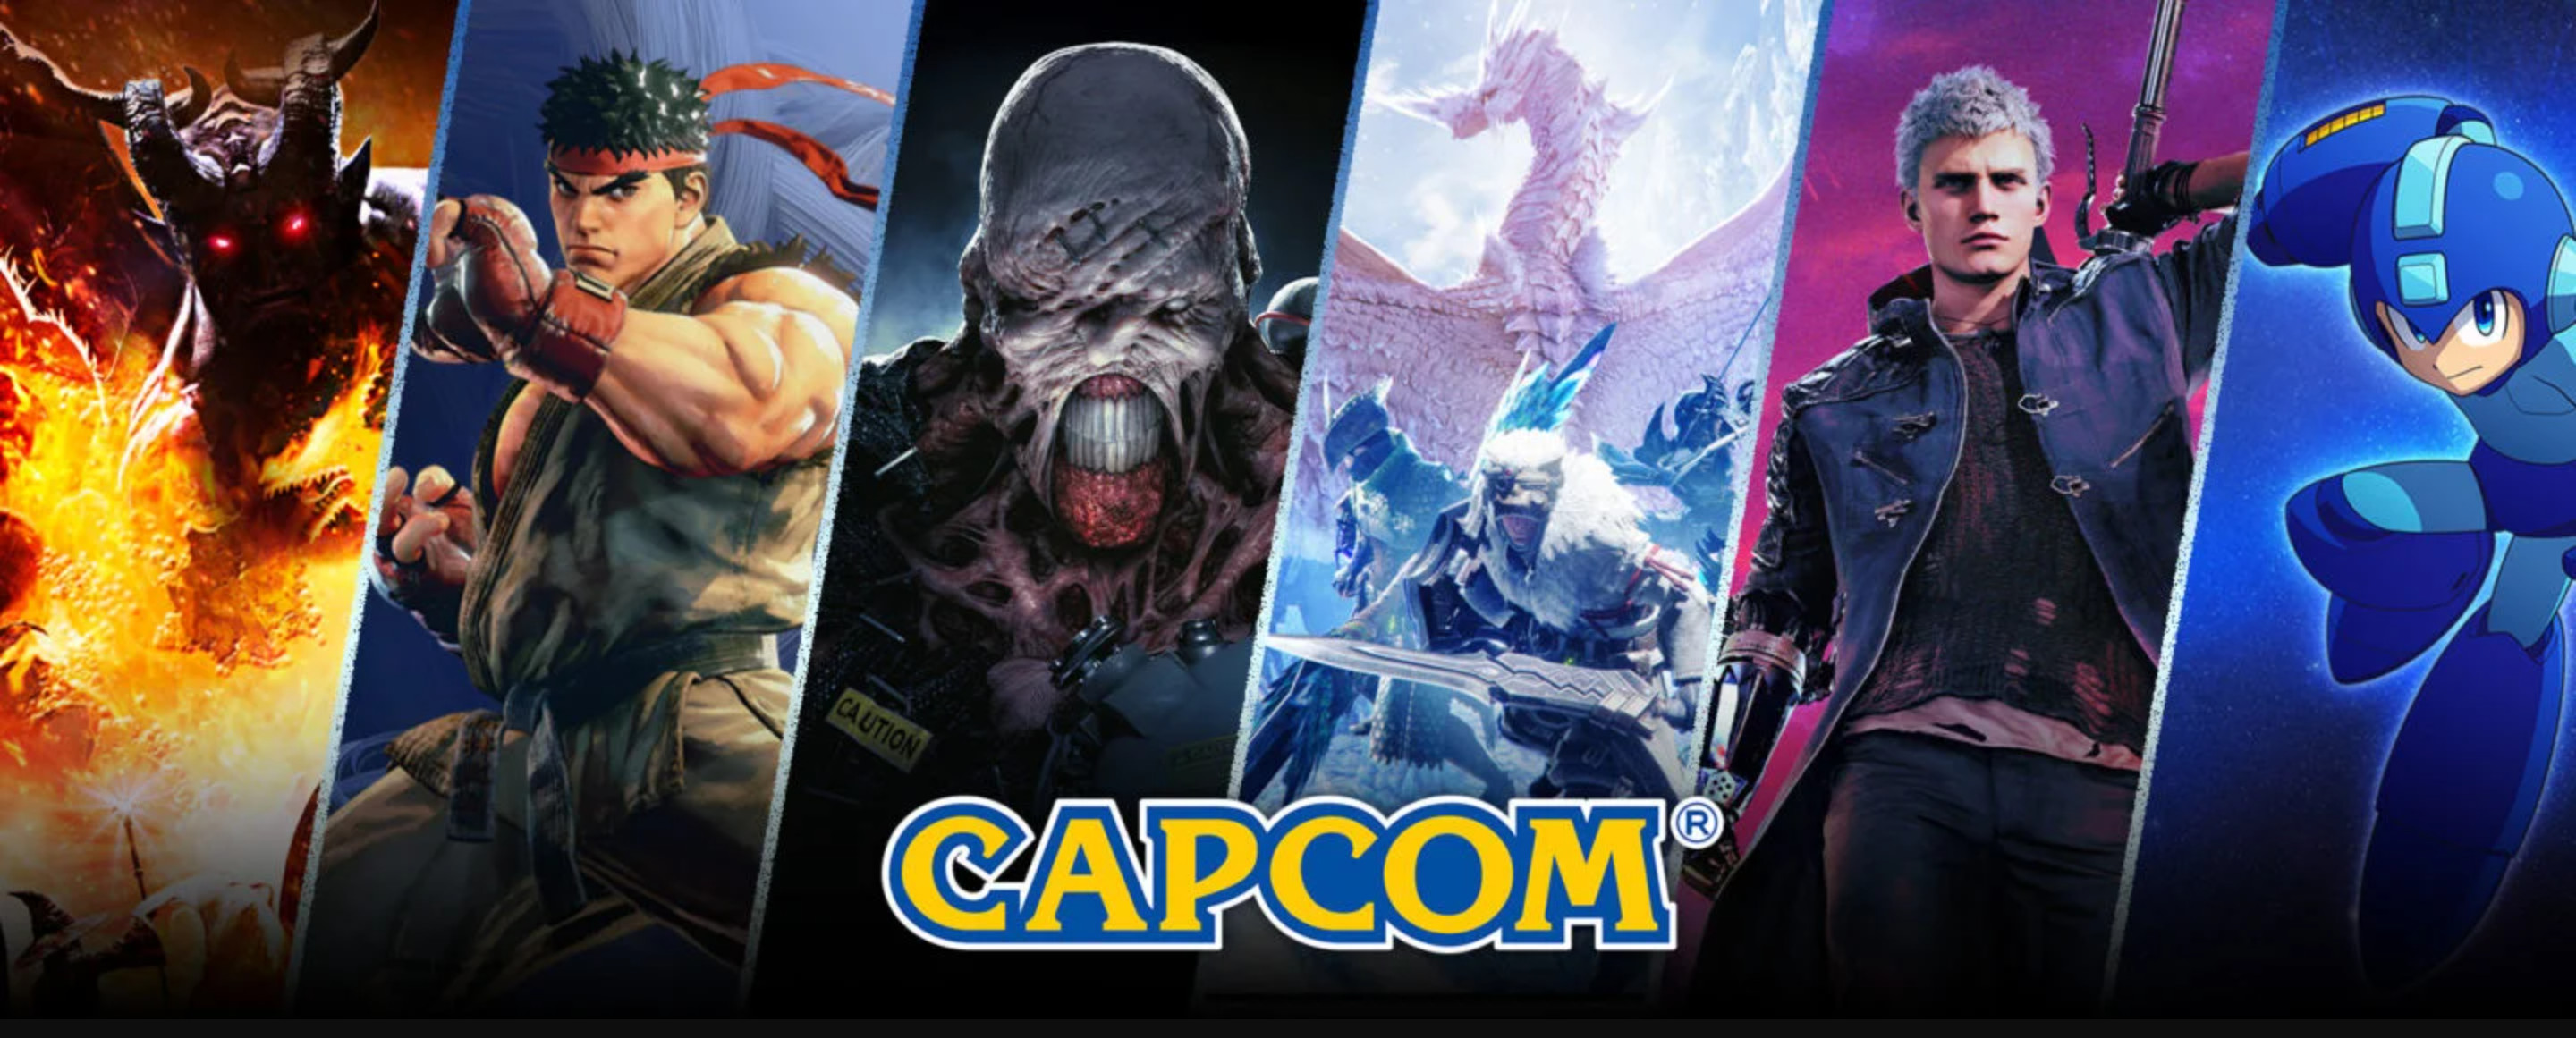 Capcom：正朝着不断第11年削减的目的稳步辇儿进